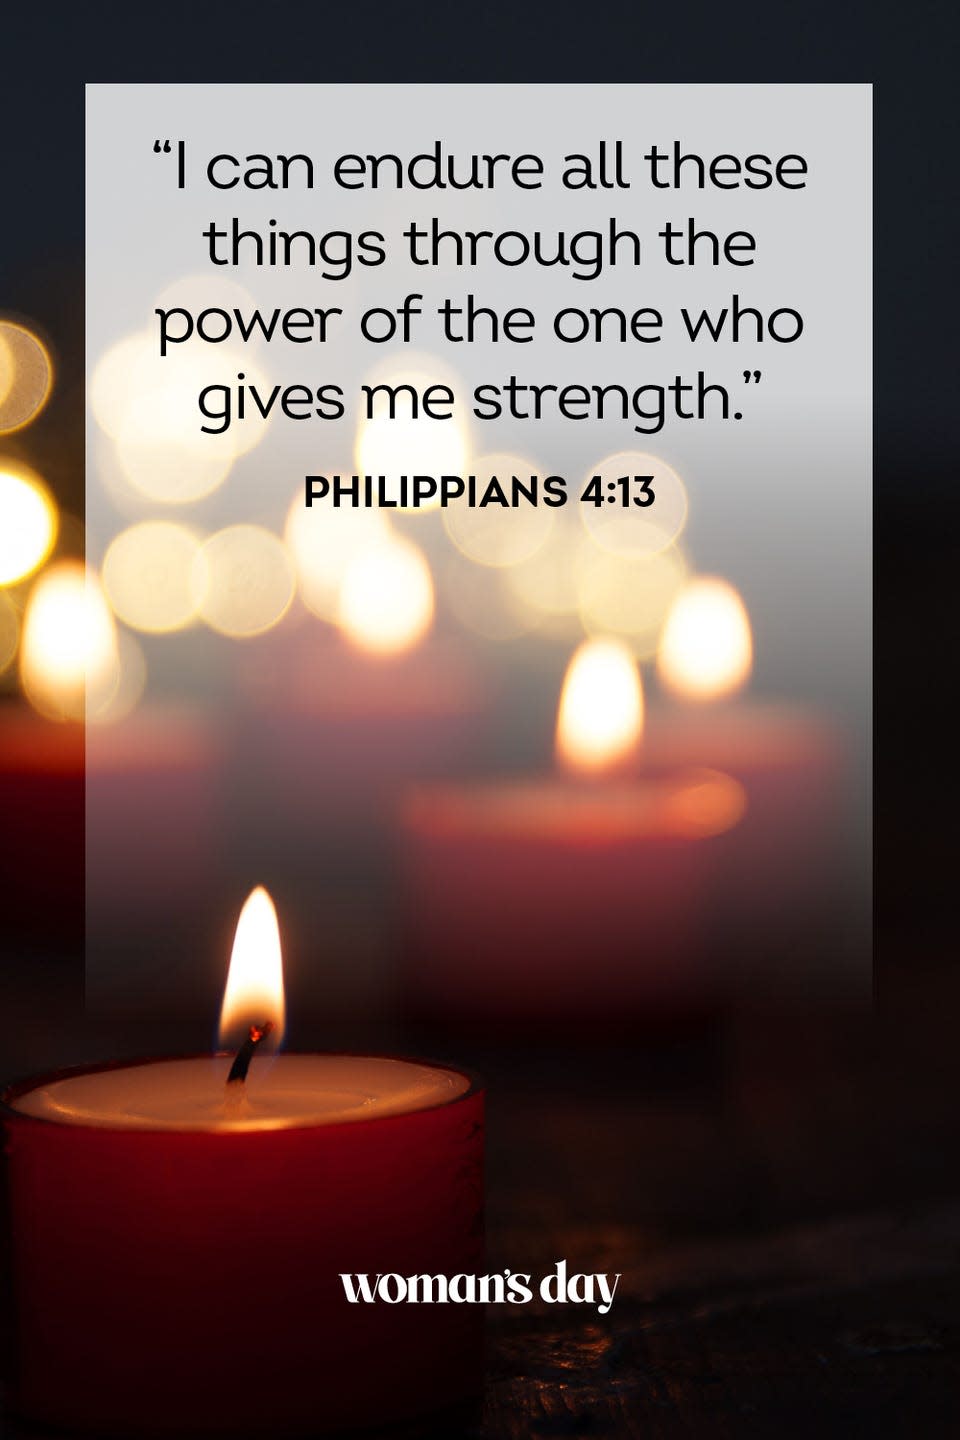 14) Philippians 4:13